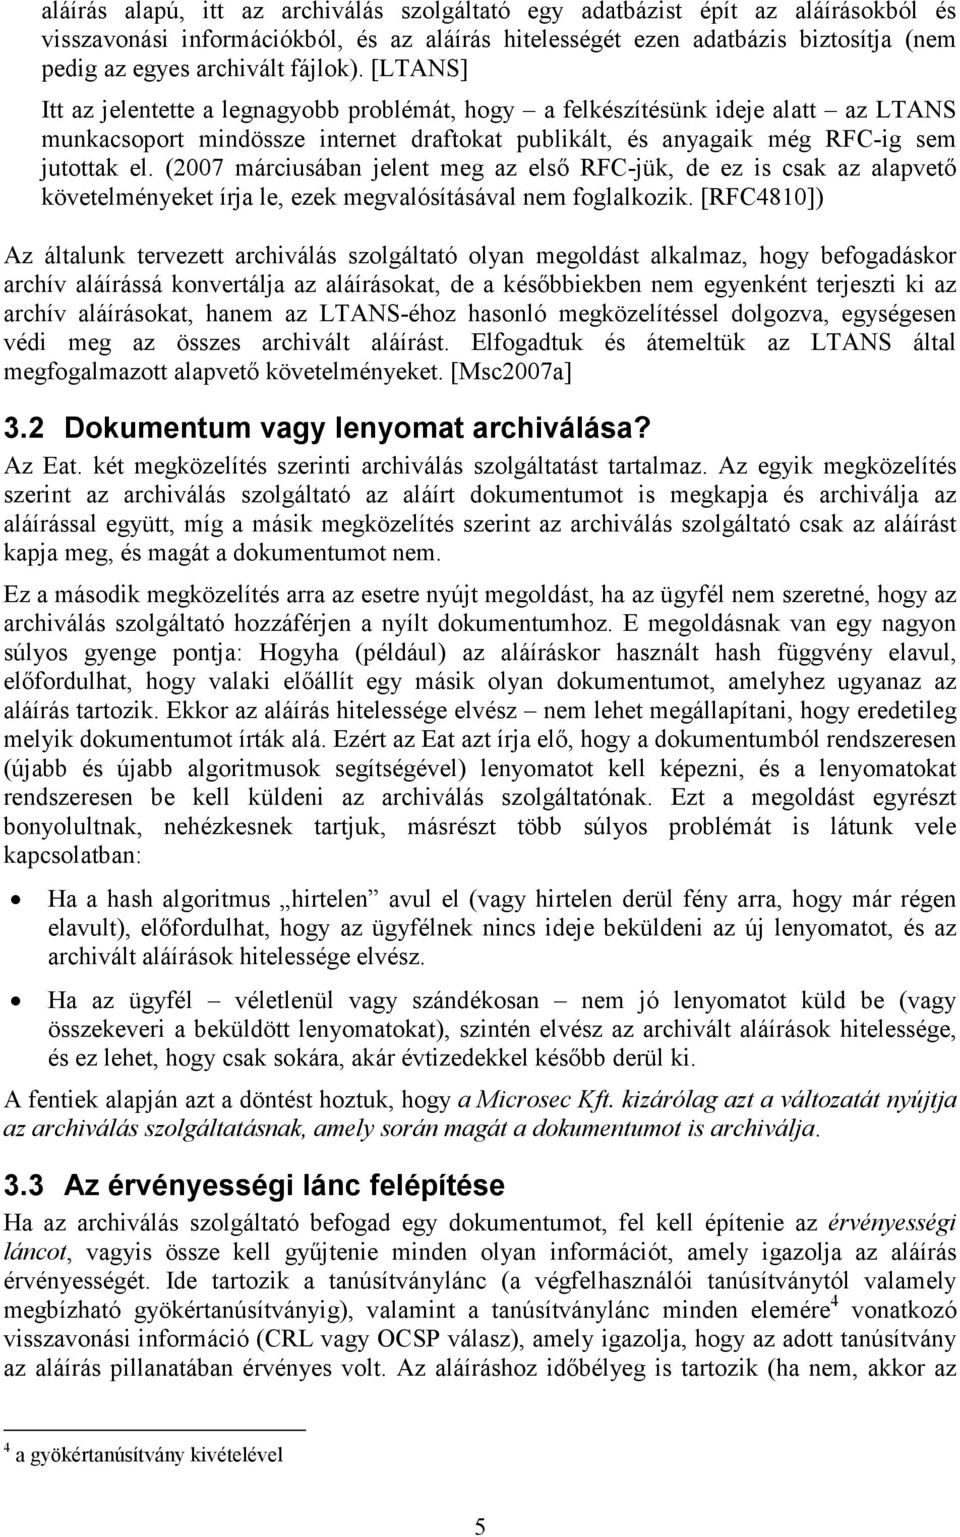 (2007 márciusában jelent meg az elsı RFC-jük, de ez is csak az alapvetı követelményeket írja le, ezek megvalósításával nem foglalkozik.